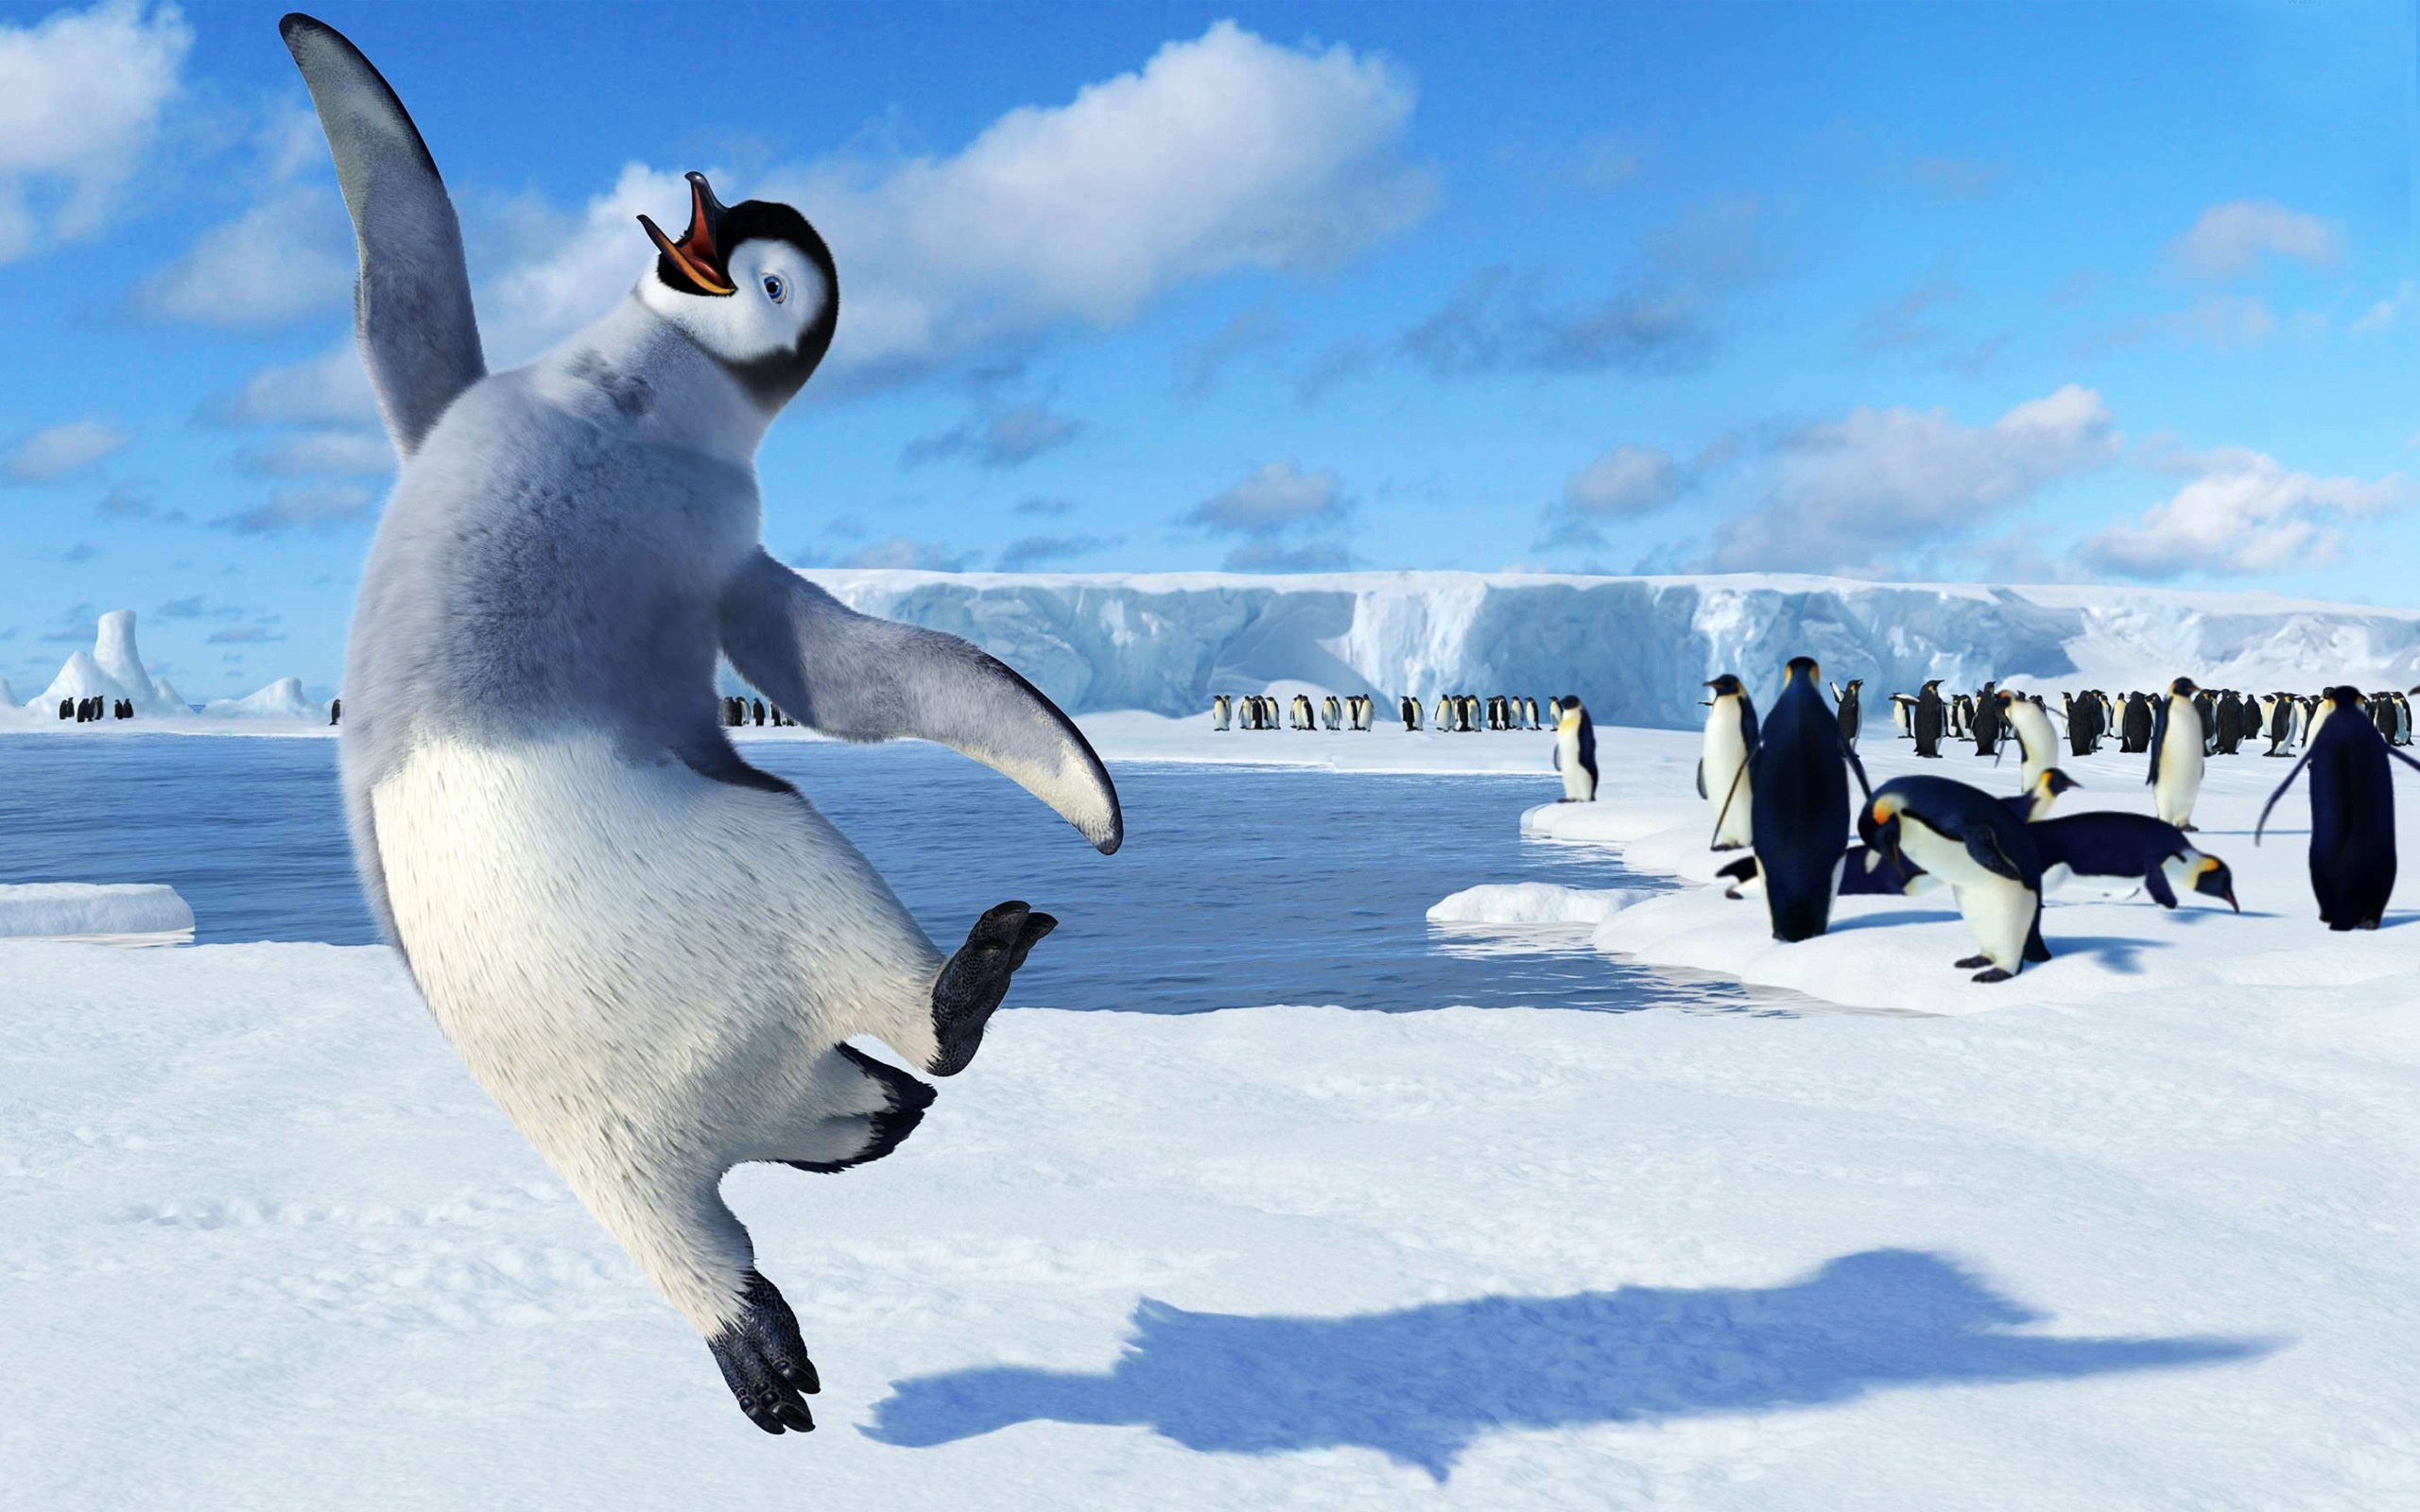 Melhores papéis de parede de Happy Feet: O Pingüim para tela do telefone